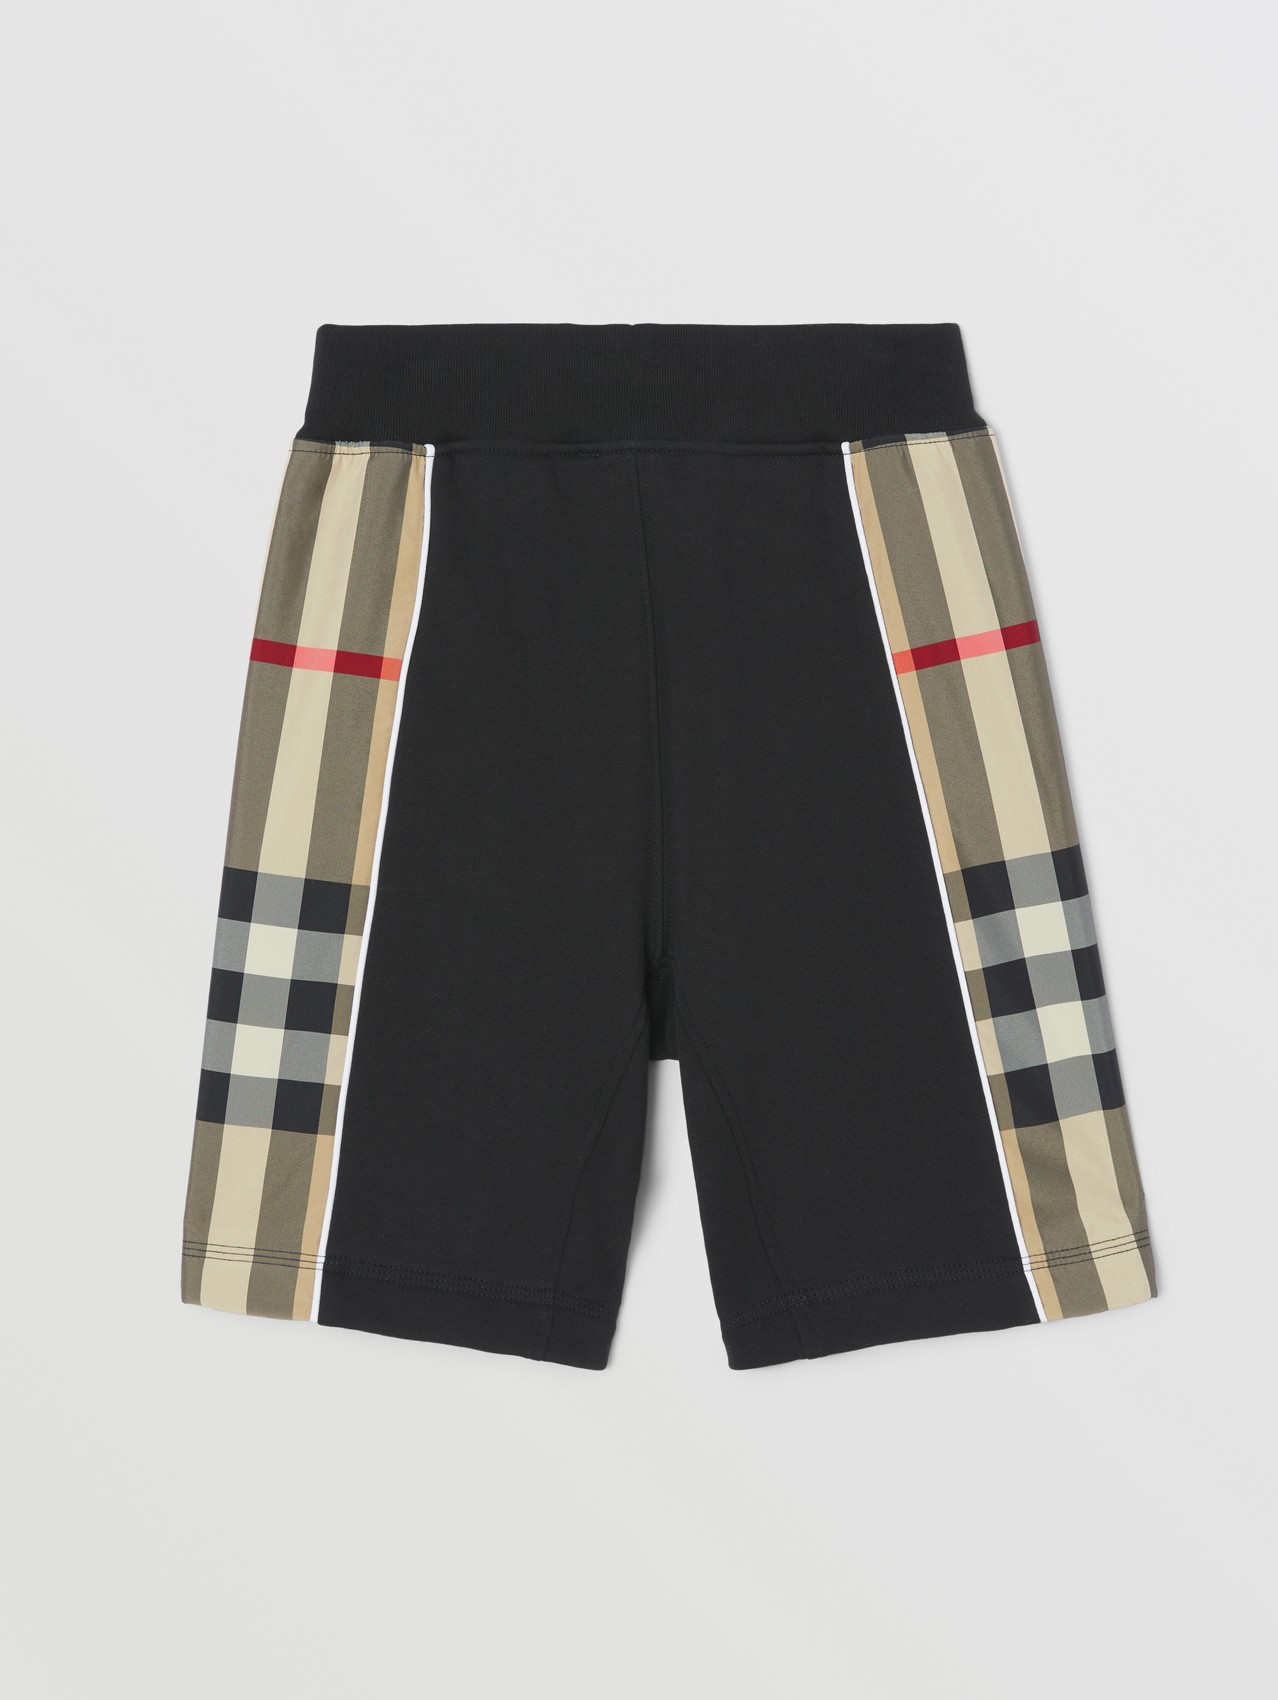 Pantalones cortos en algodón con paneles a cuadros (Negro)